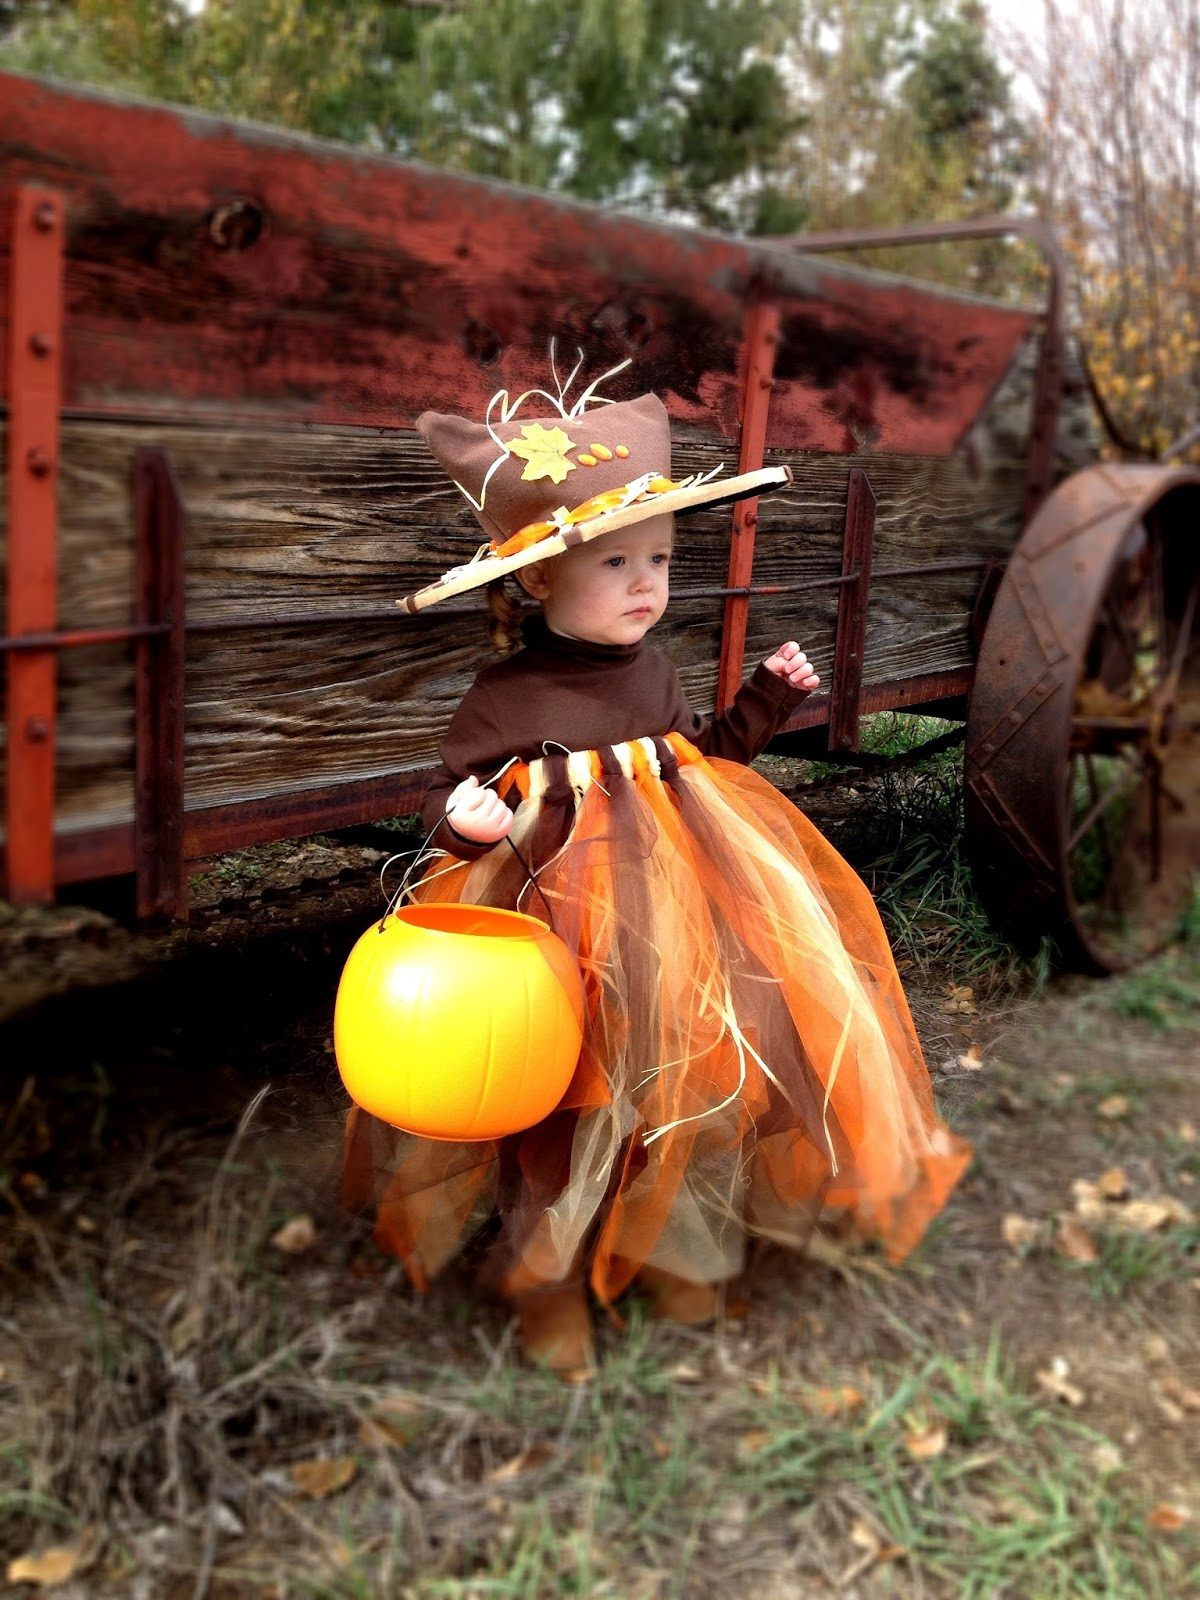 DIY Pumpkin Costume Toddler
 A Scarecrow Pumpkin Princess DIY